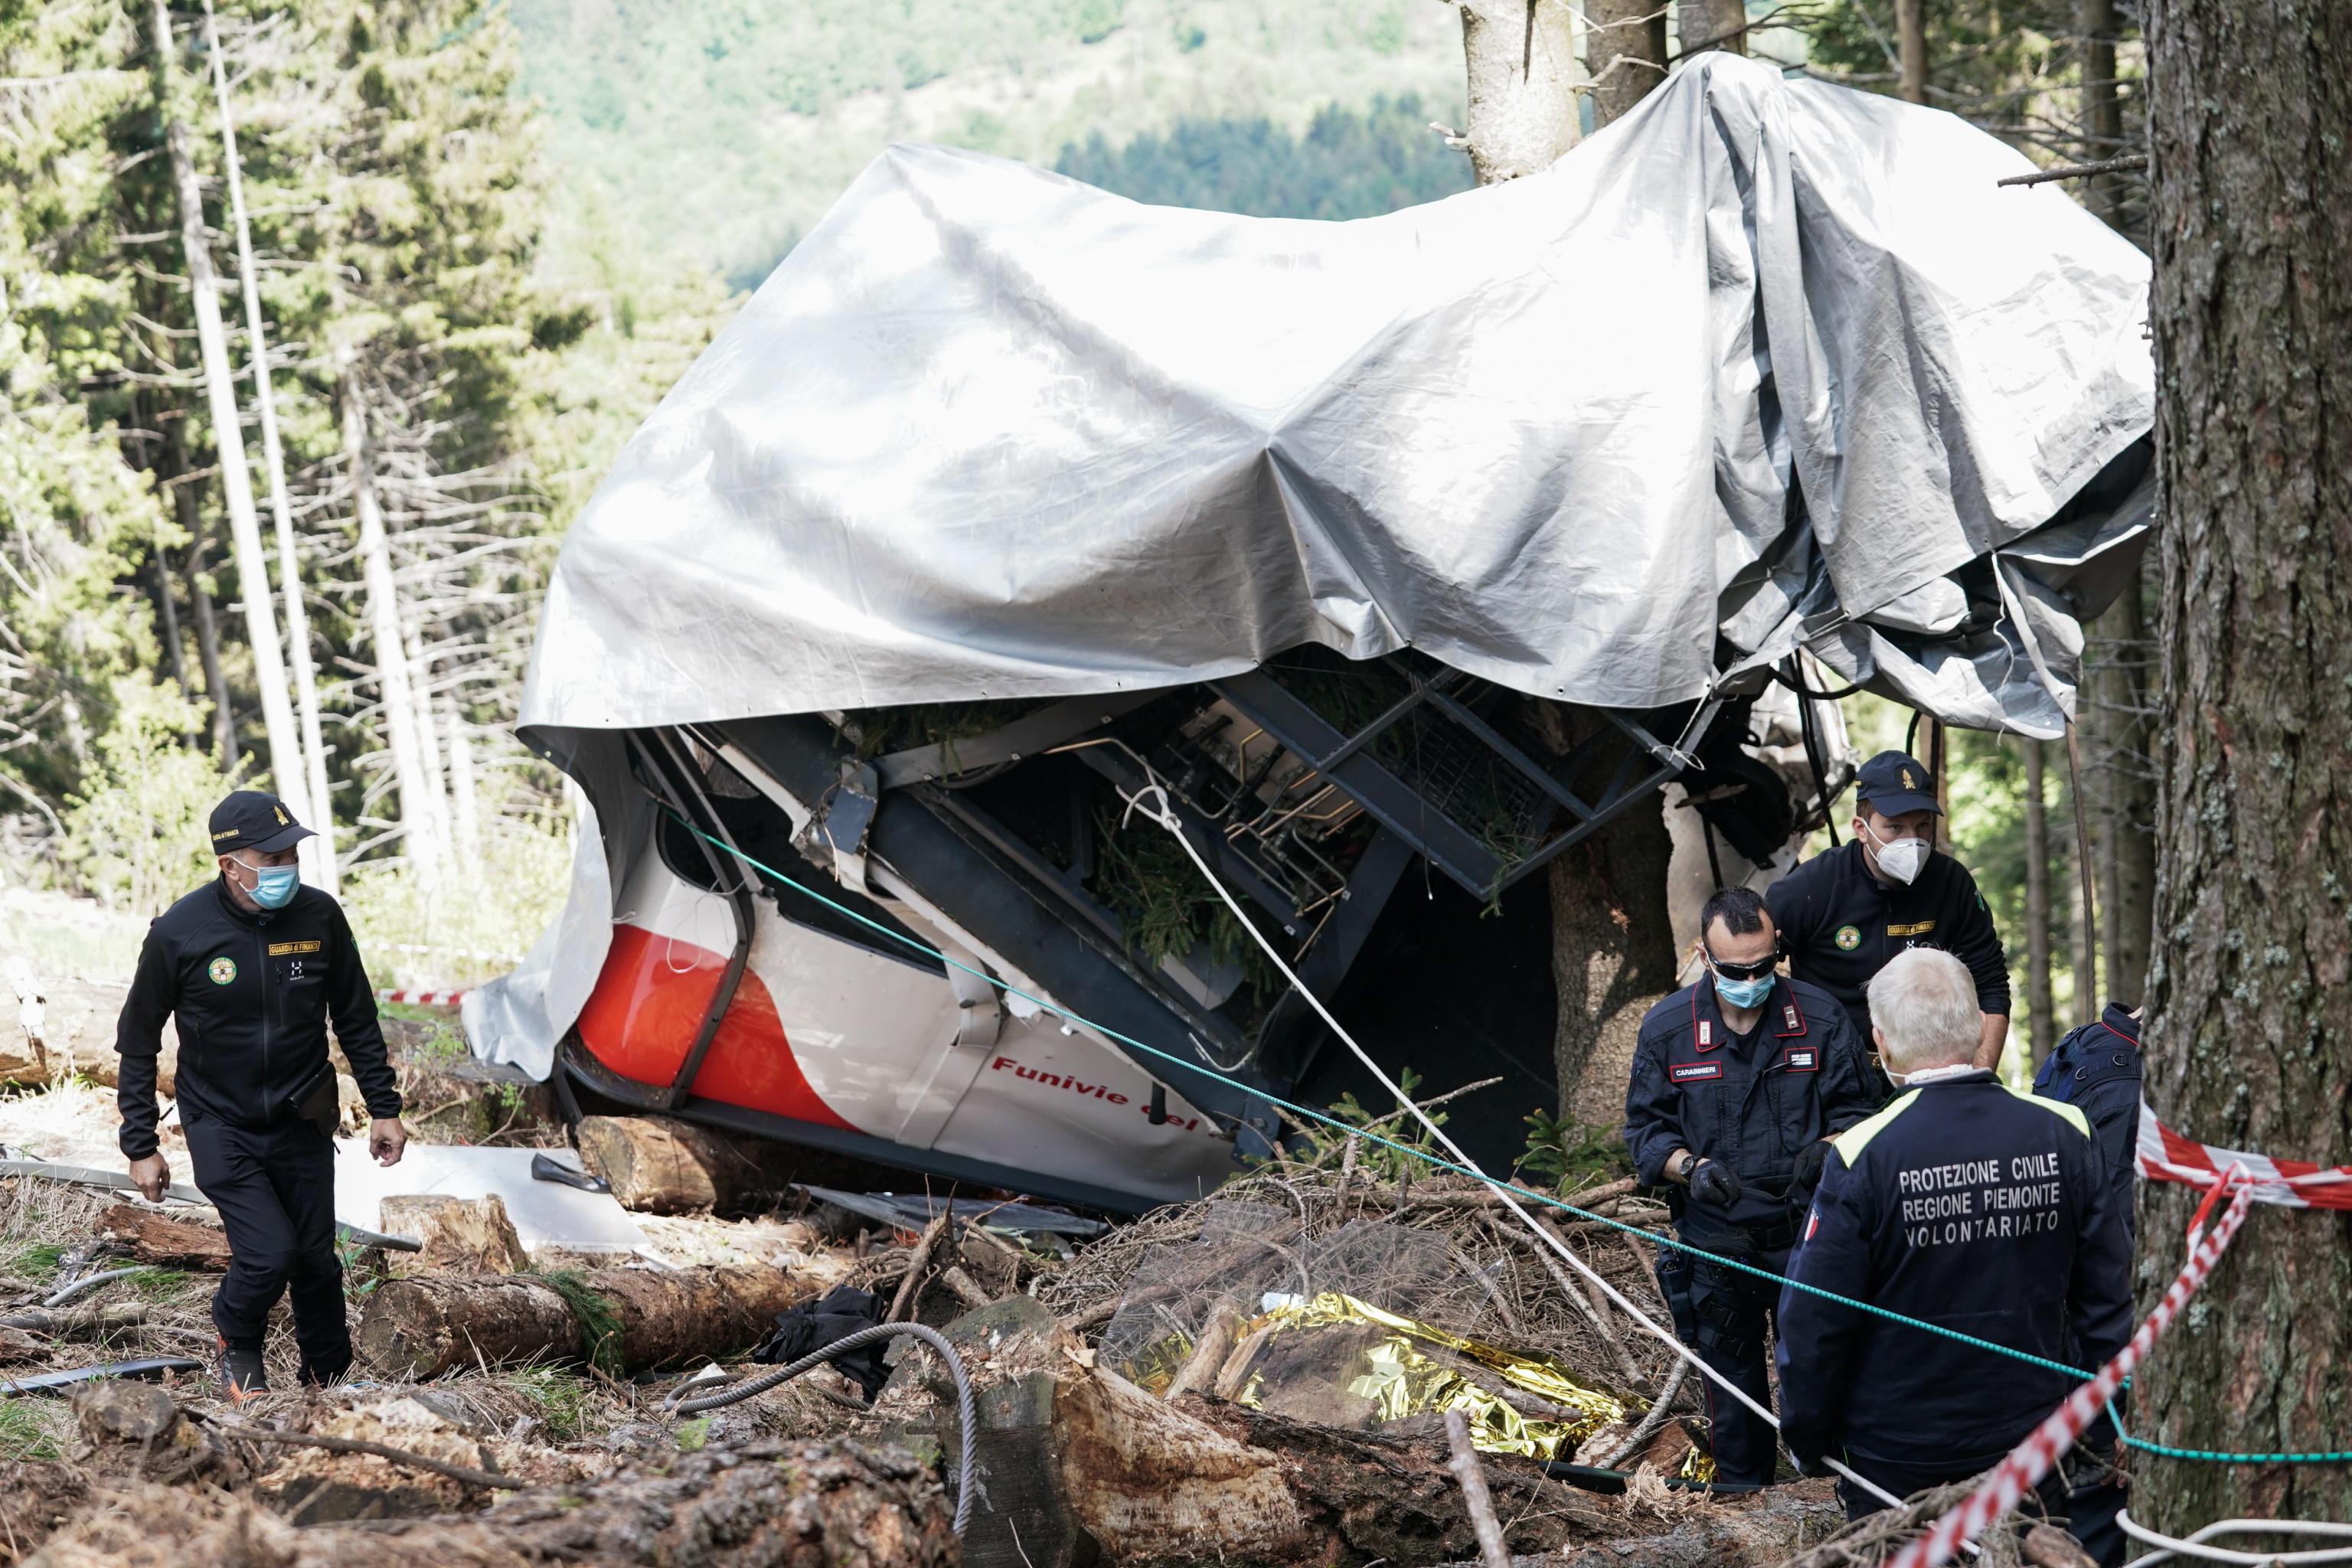 Abgestürzte Gondel wird entfernt - Weiter Suche nach Grund für Katastrophe